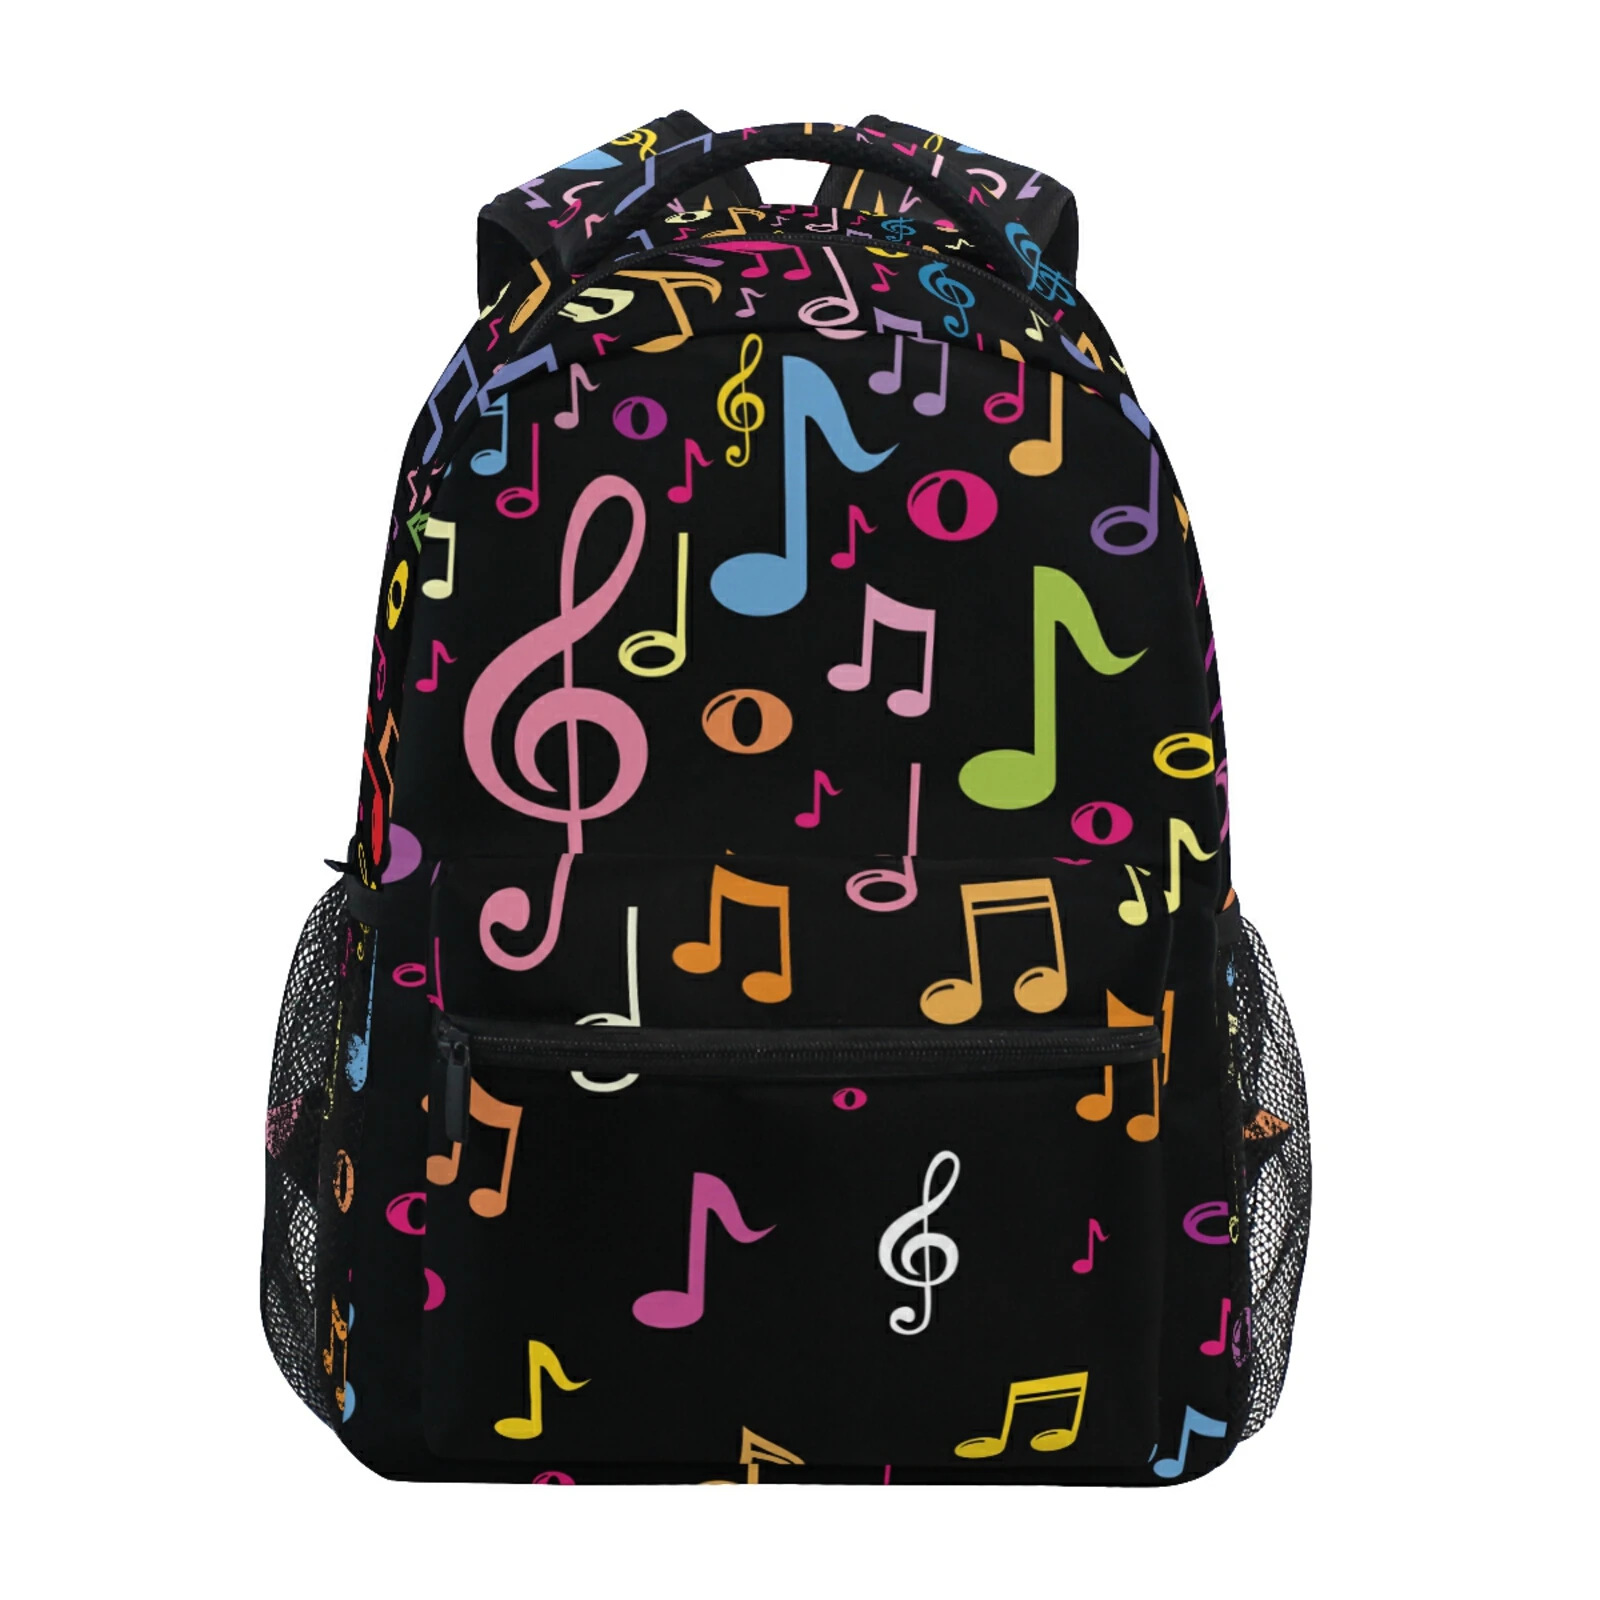 Рюкзак с принтом музыкальных нот для мальчиков и девочек, школьный ранец черного цвета для студентов и подростков, дорожная сумка, 2022